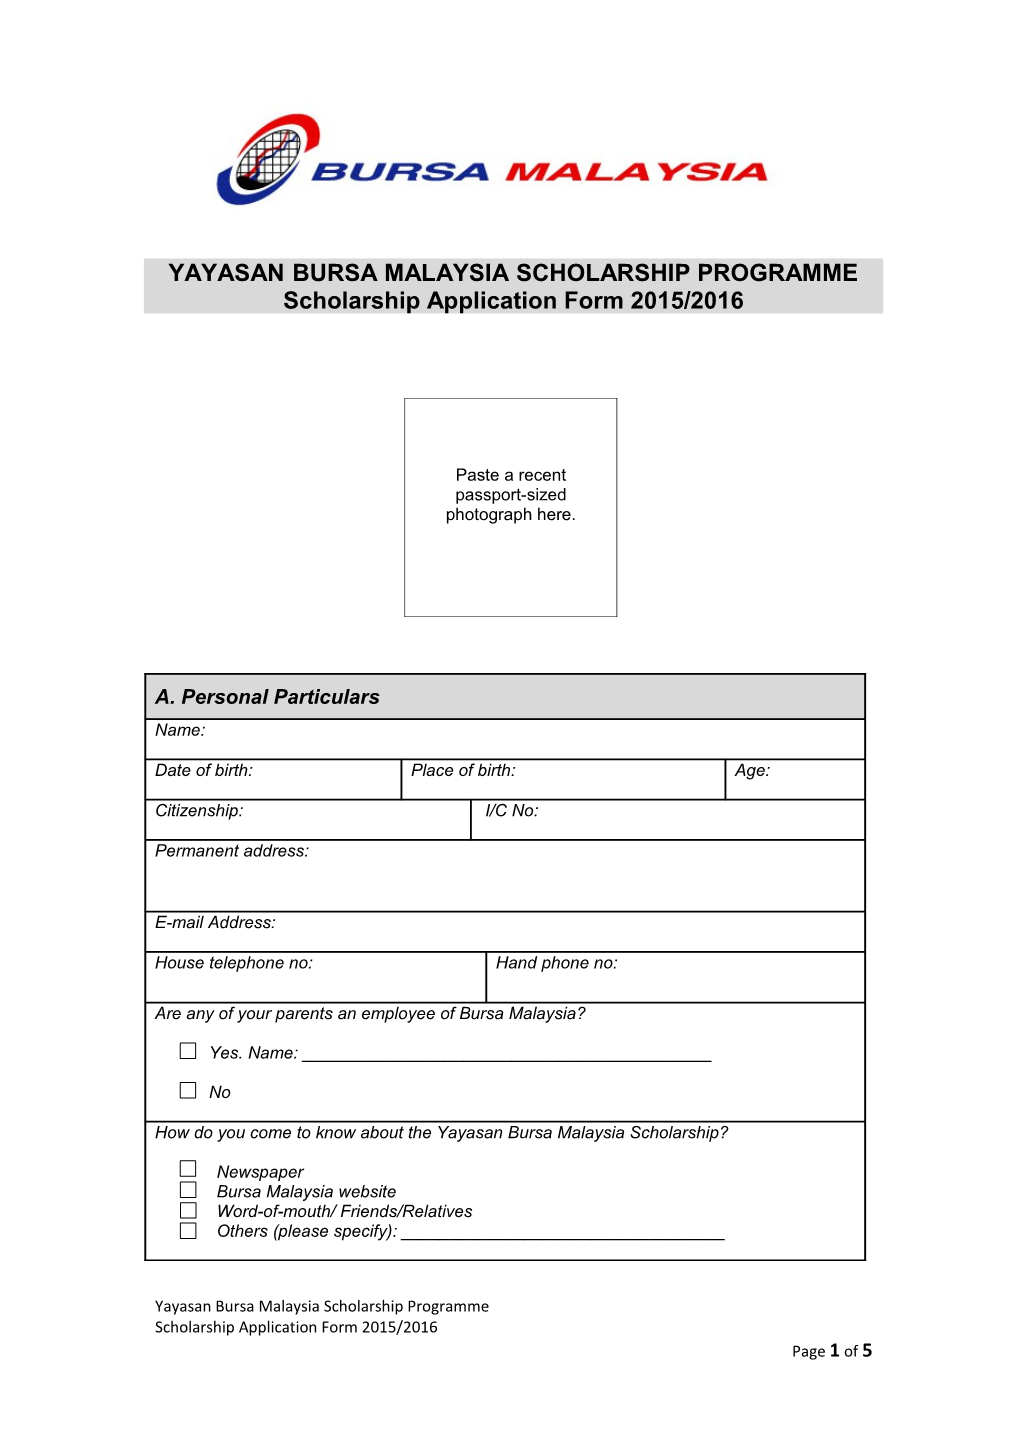 Yayasan Bursa Malaysia Scholarship Programme